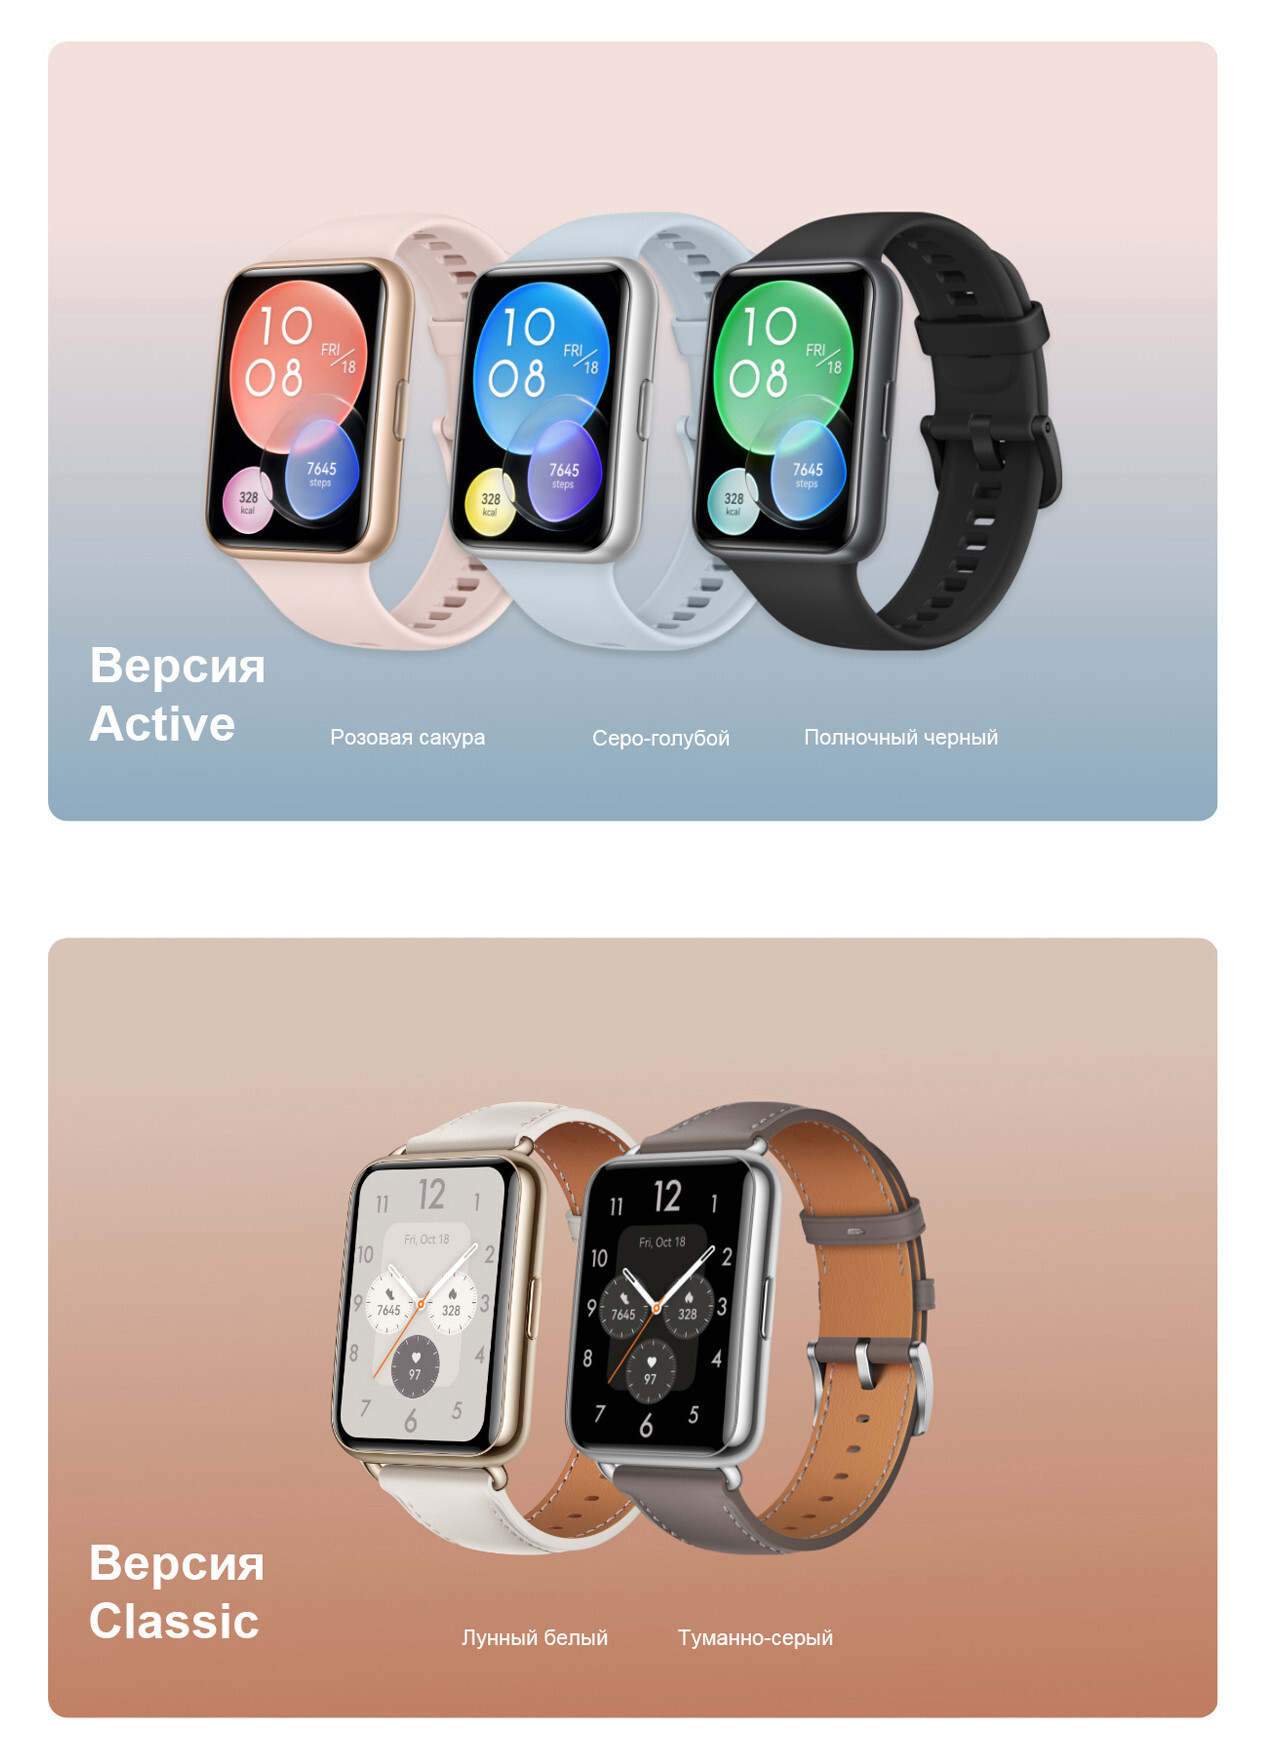 Huawei watch fit sakura. Смарт-часы Huawei Fit 2 Active. Huawei watch Fit 2. Huawei умные часы Fit 2 Active Edition. Смарт часы Huawei Fit New 2.